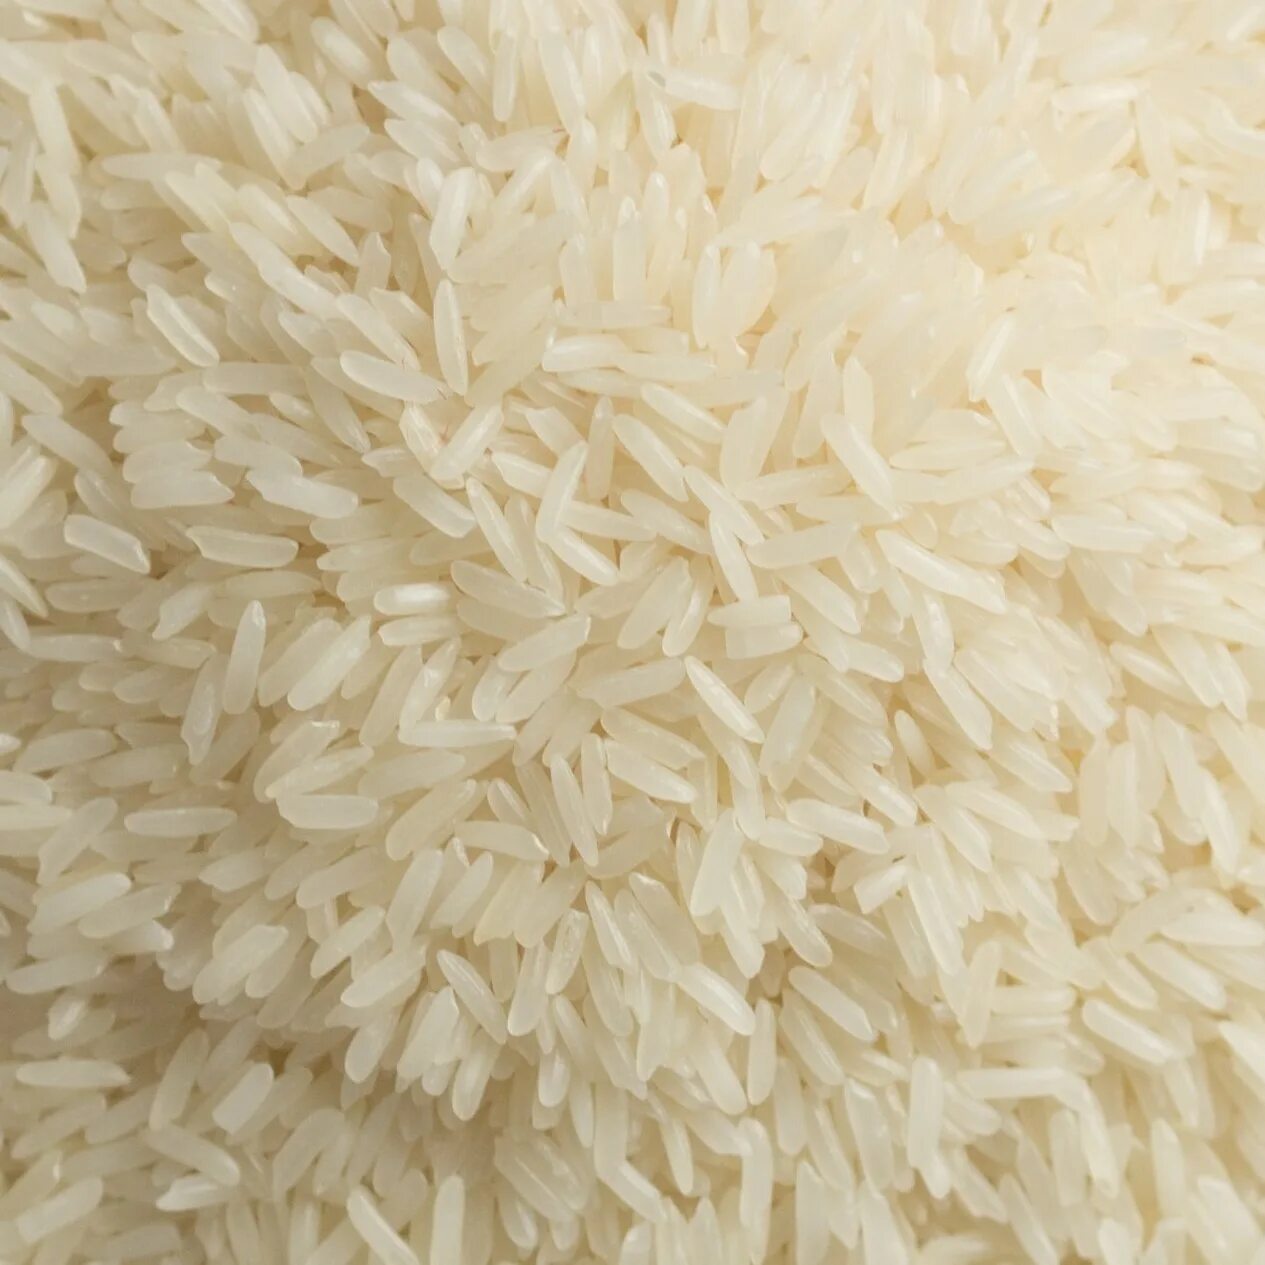 Рис басмати вареный. Патна рис. Длиннозерный рассыпчатый рис. Виды риса басмати. Басмати что это такое